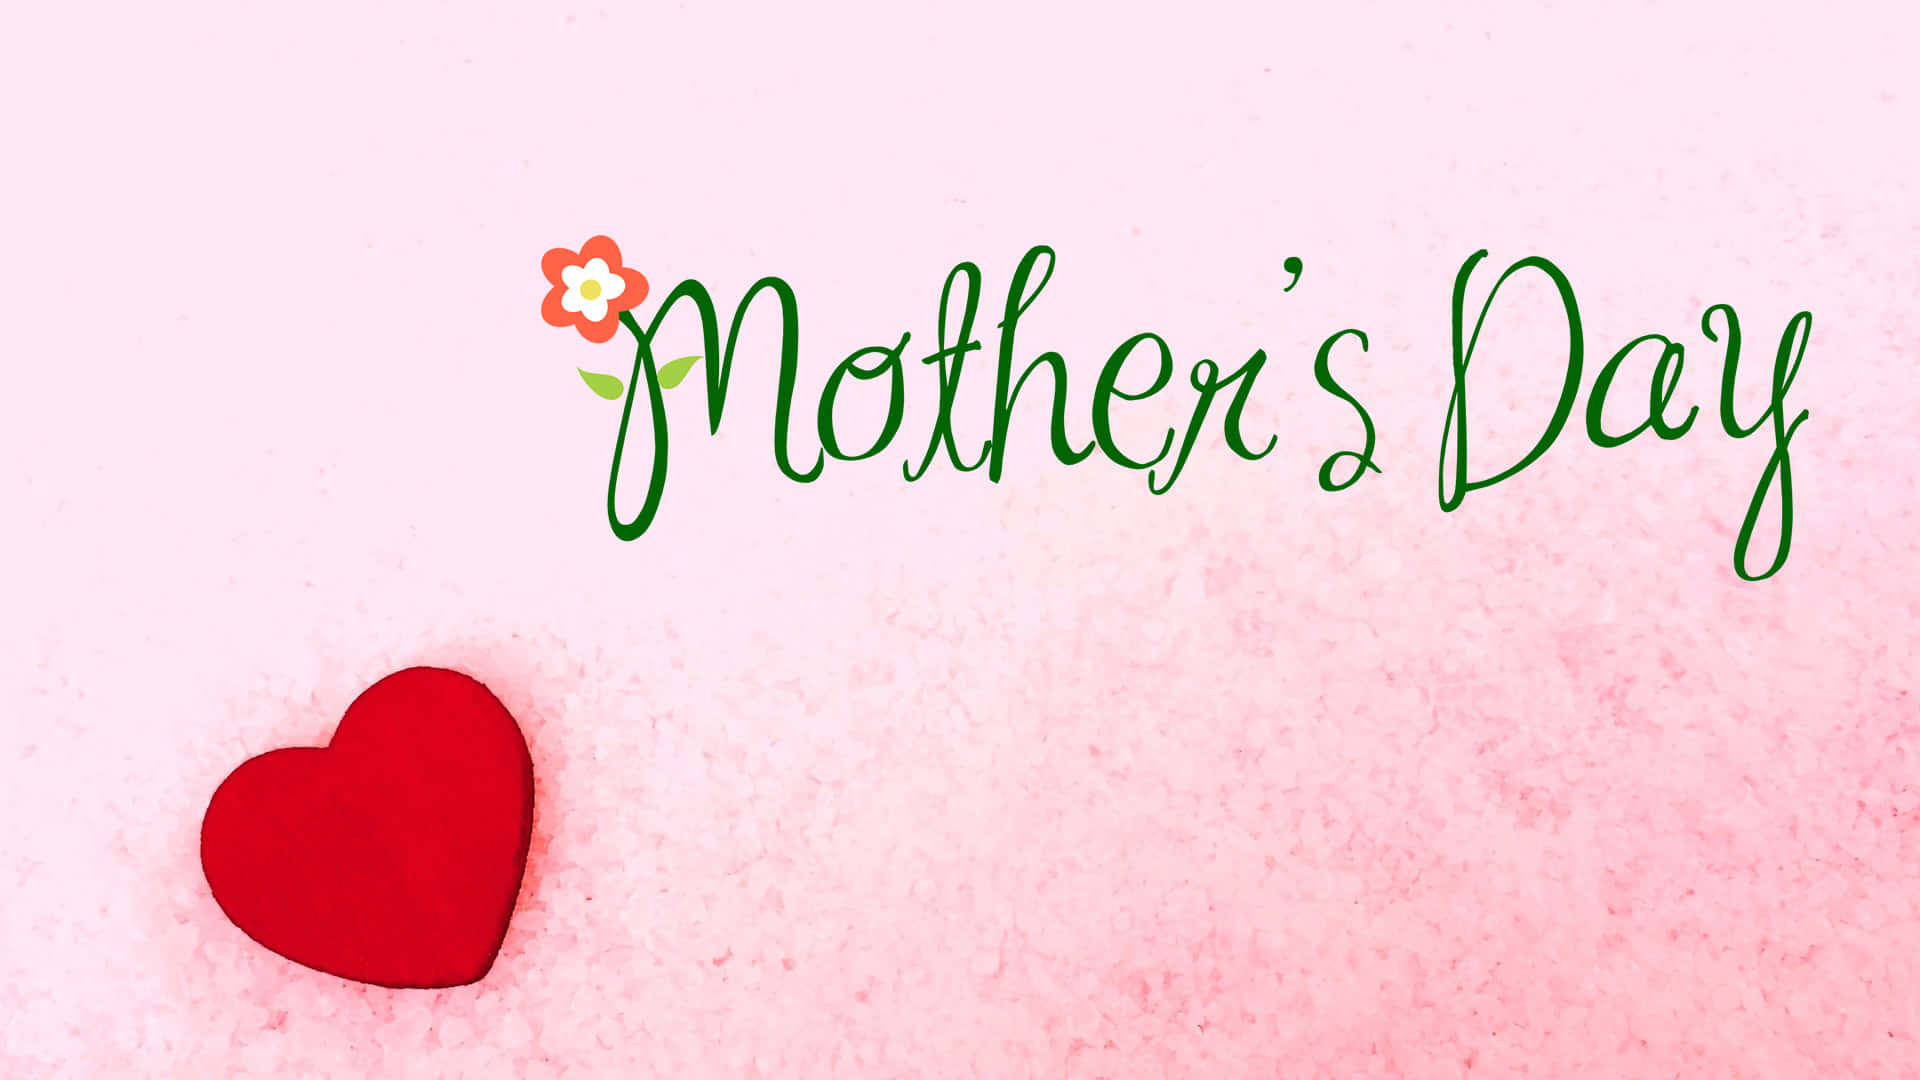 Celebrael Amor Infinito De Las Madres En El Día De La Madre